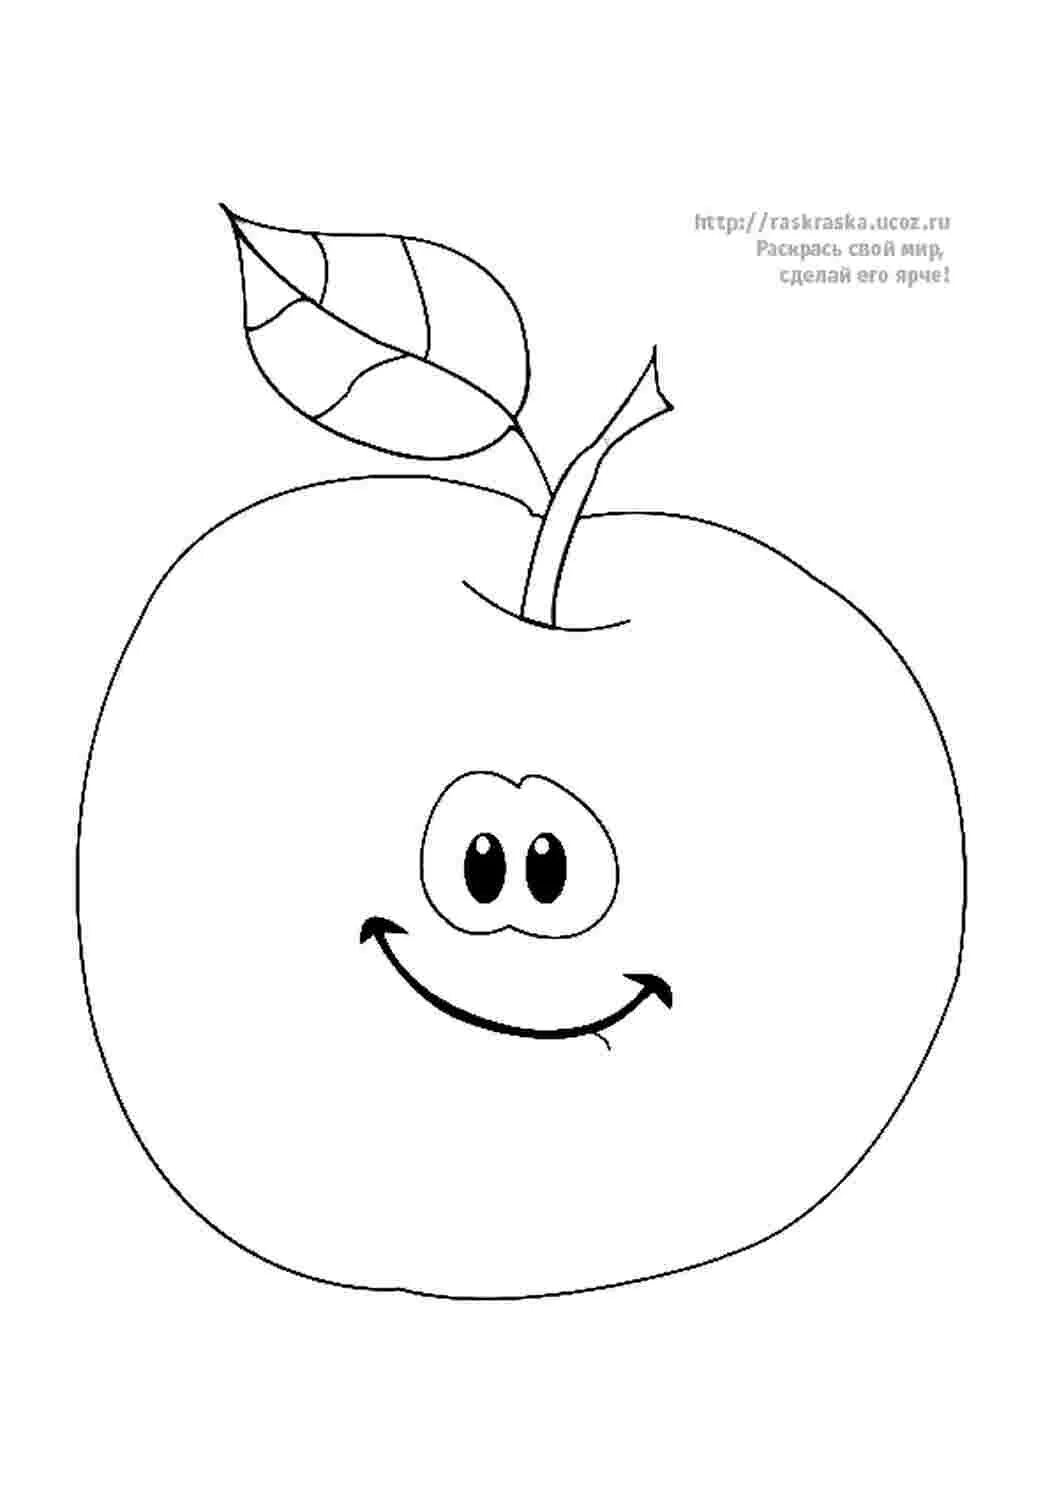 Раскраска 3 яблока. Яблоко раскраска. Яблоко раскраска для малышей. Рисунок яблоко для раскрашивания. Яблочко раскраска.